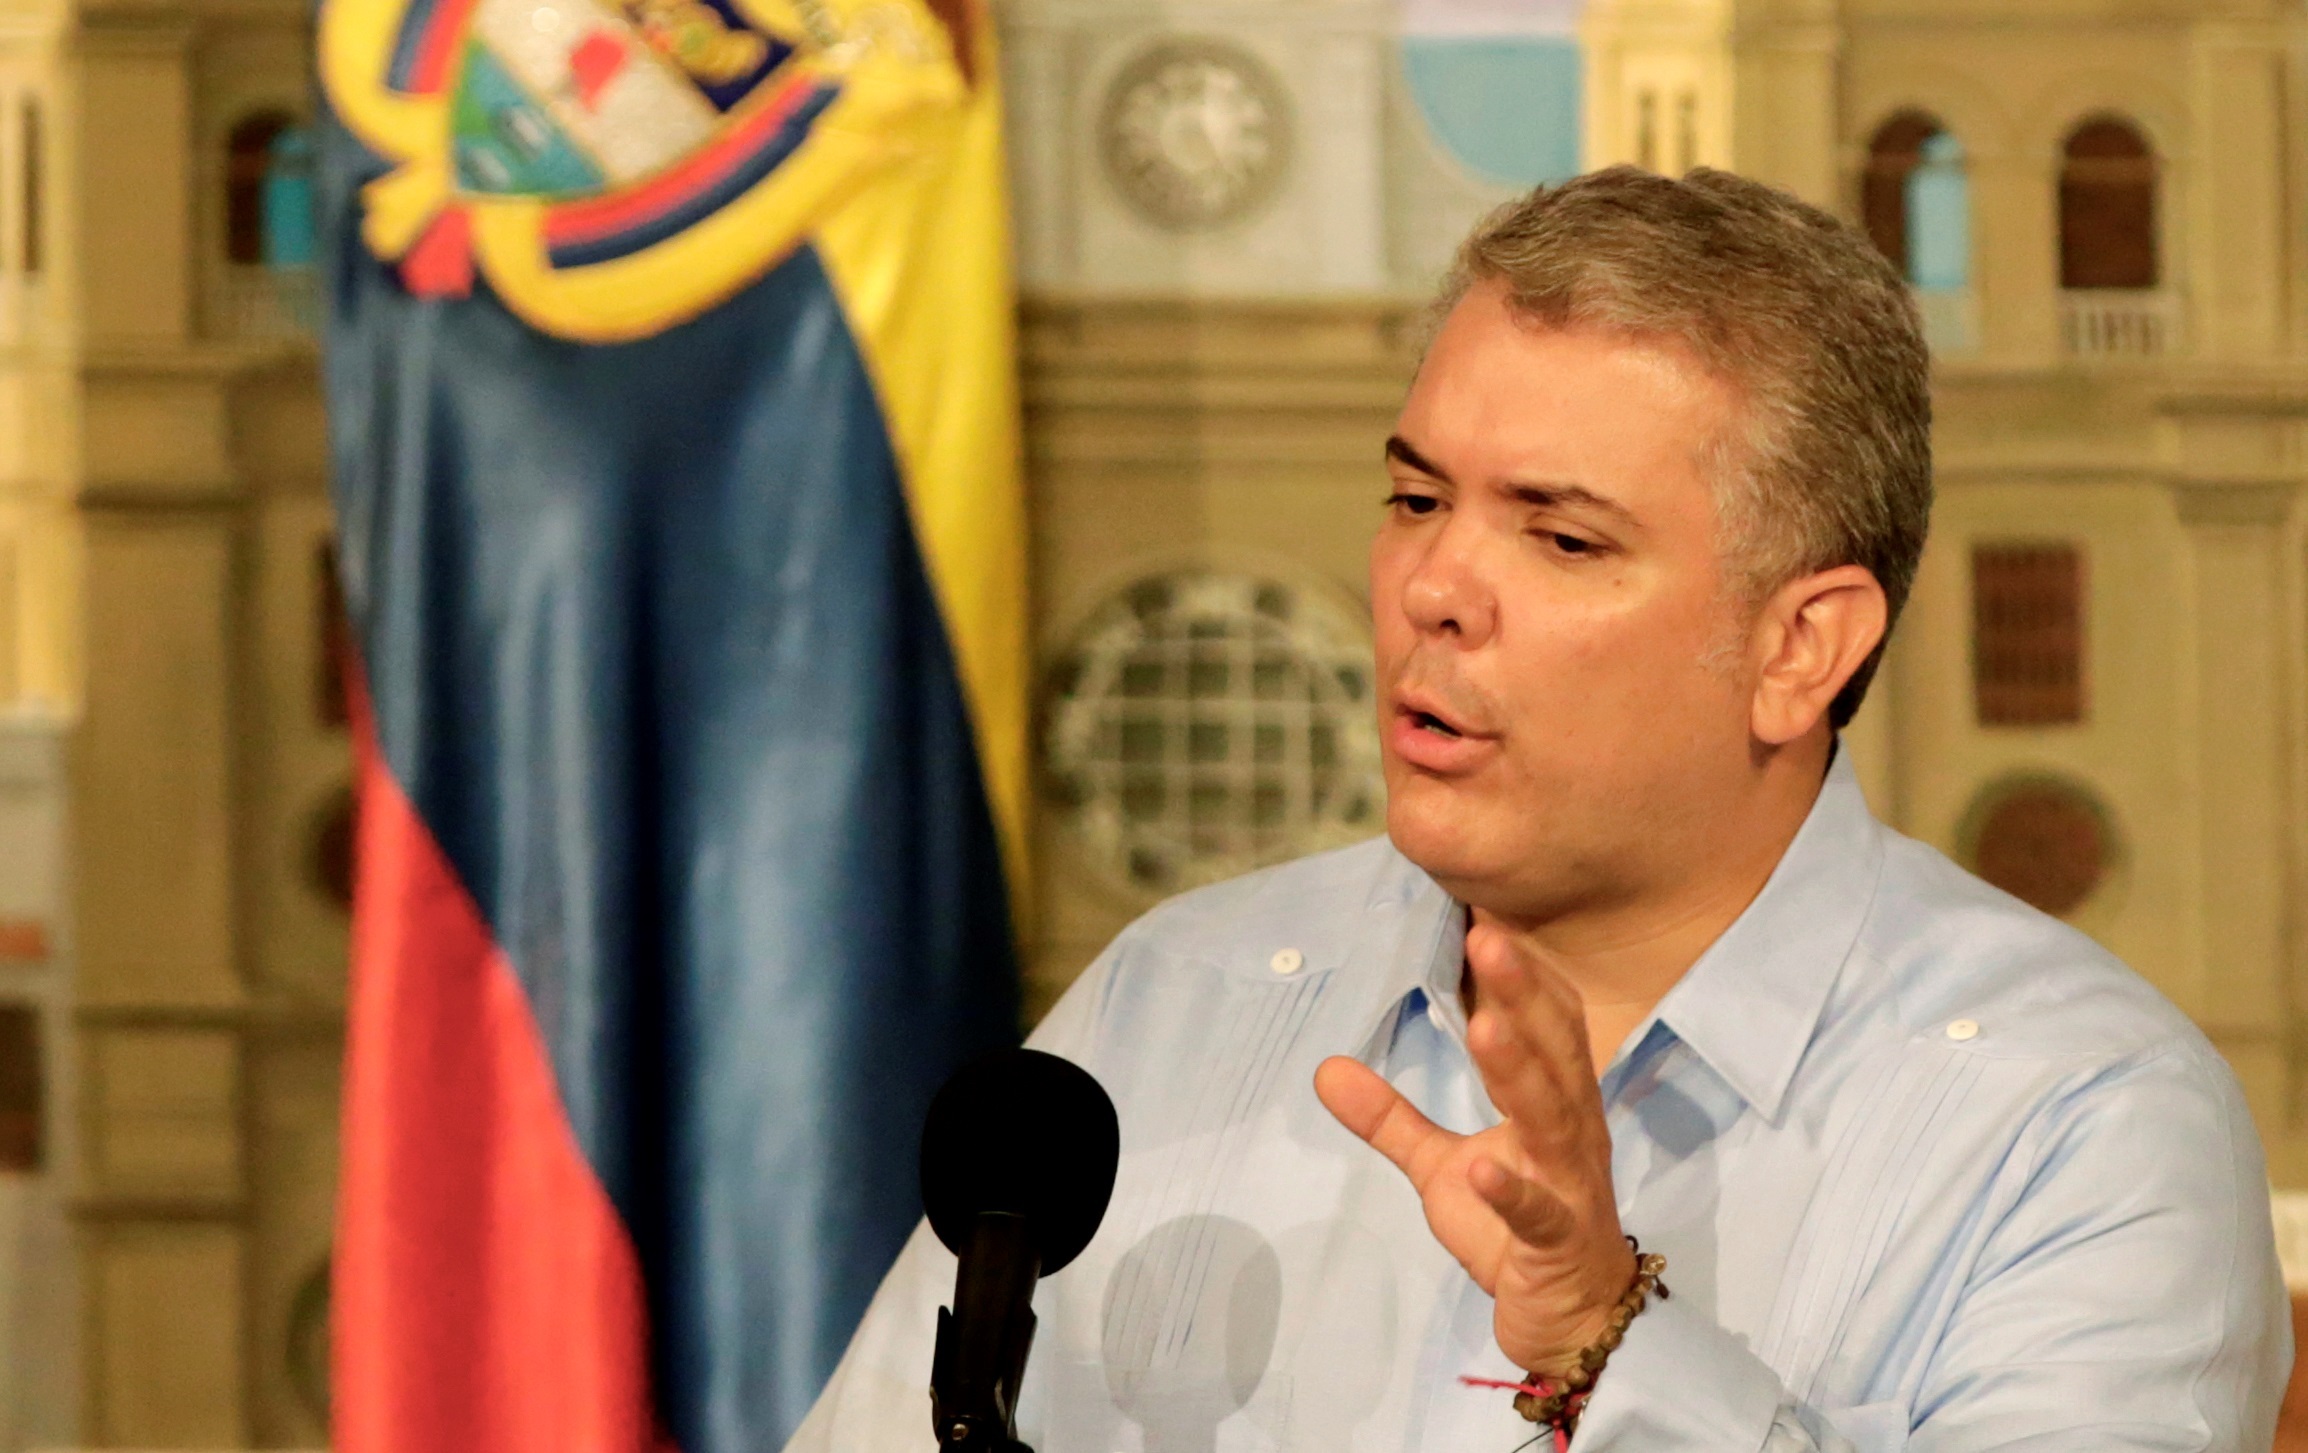 “Defender presunción de inocencia es mi obligación como Presidente”, resaltó Duque sobre Uribe